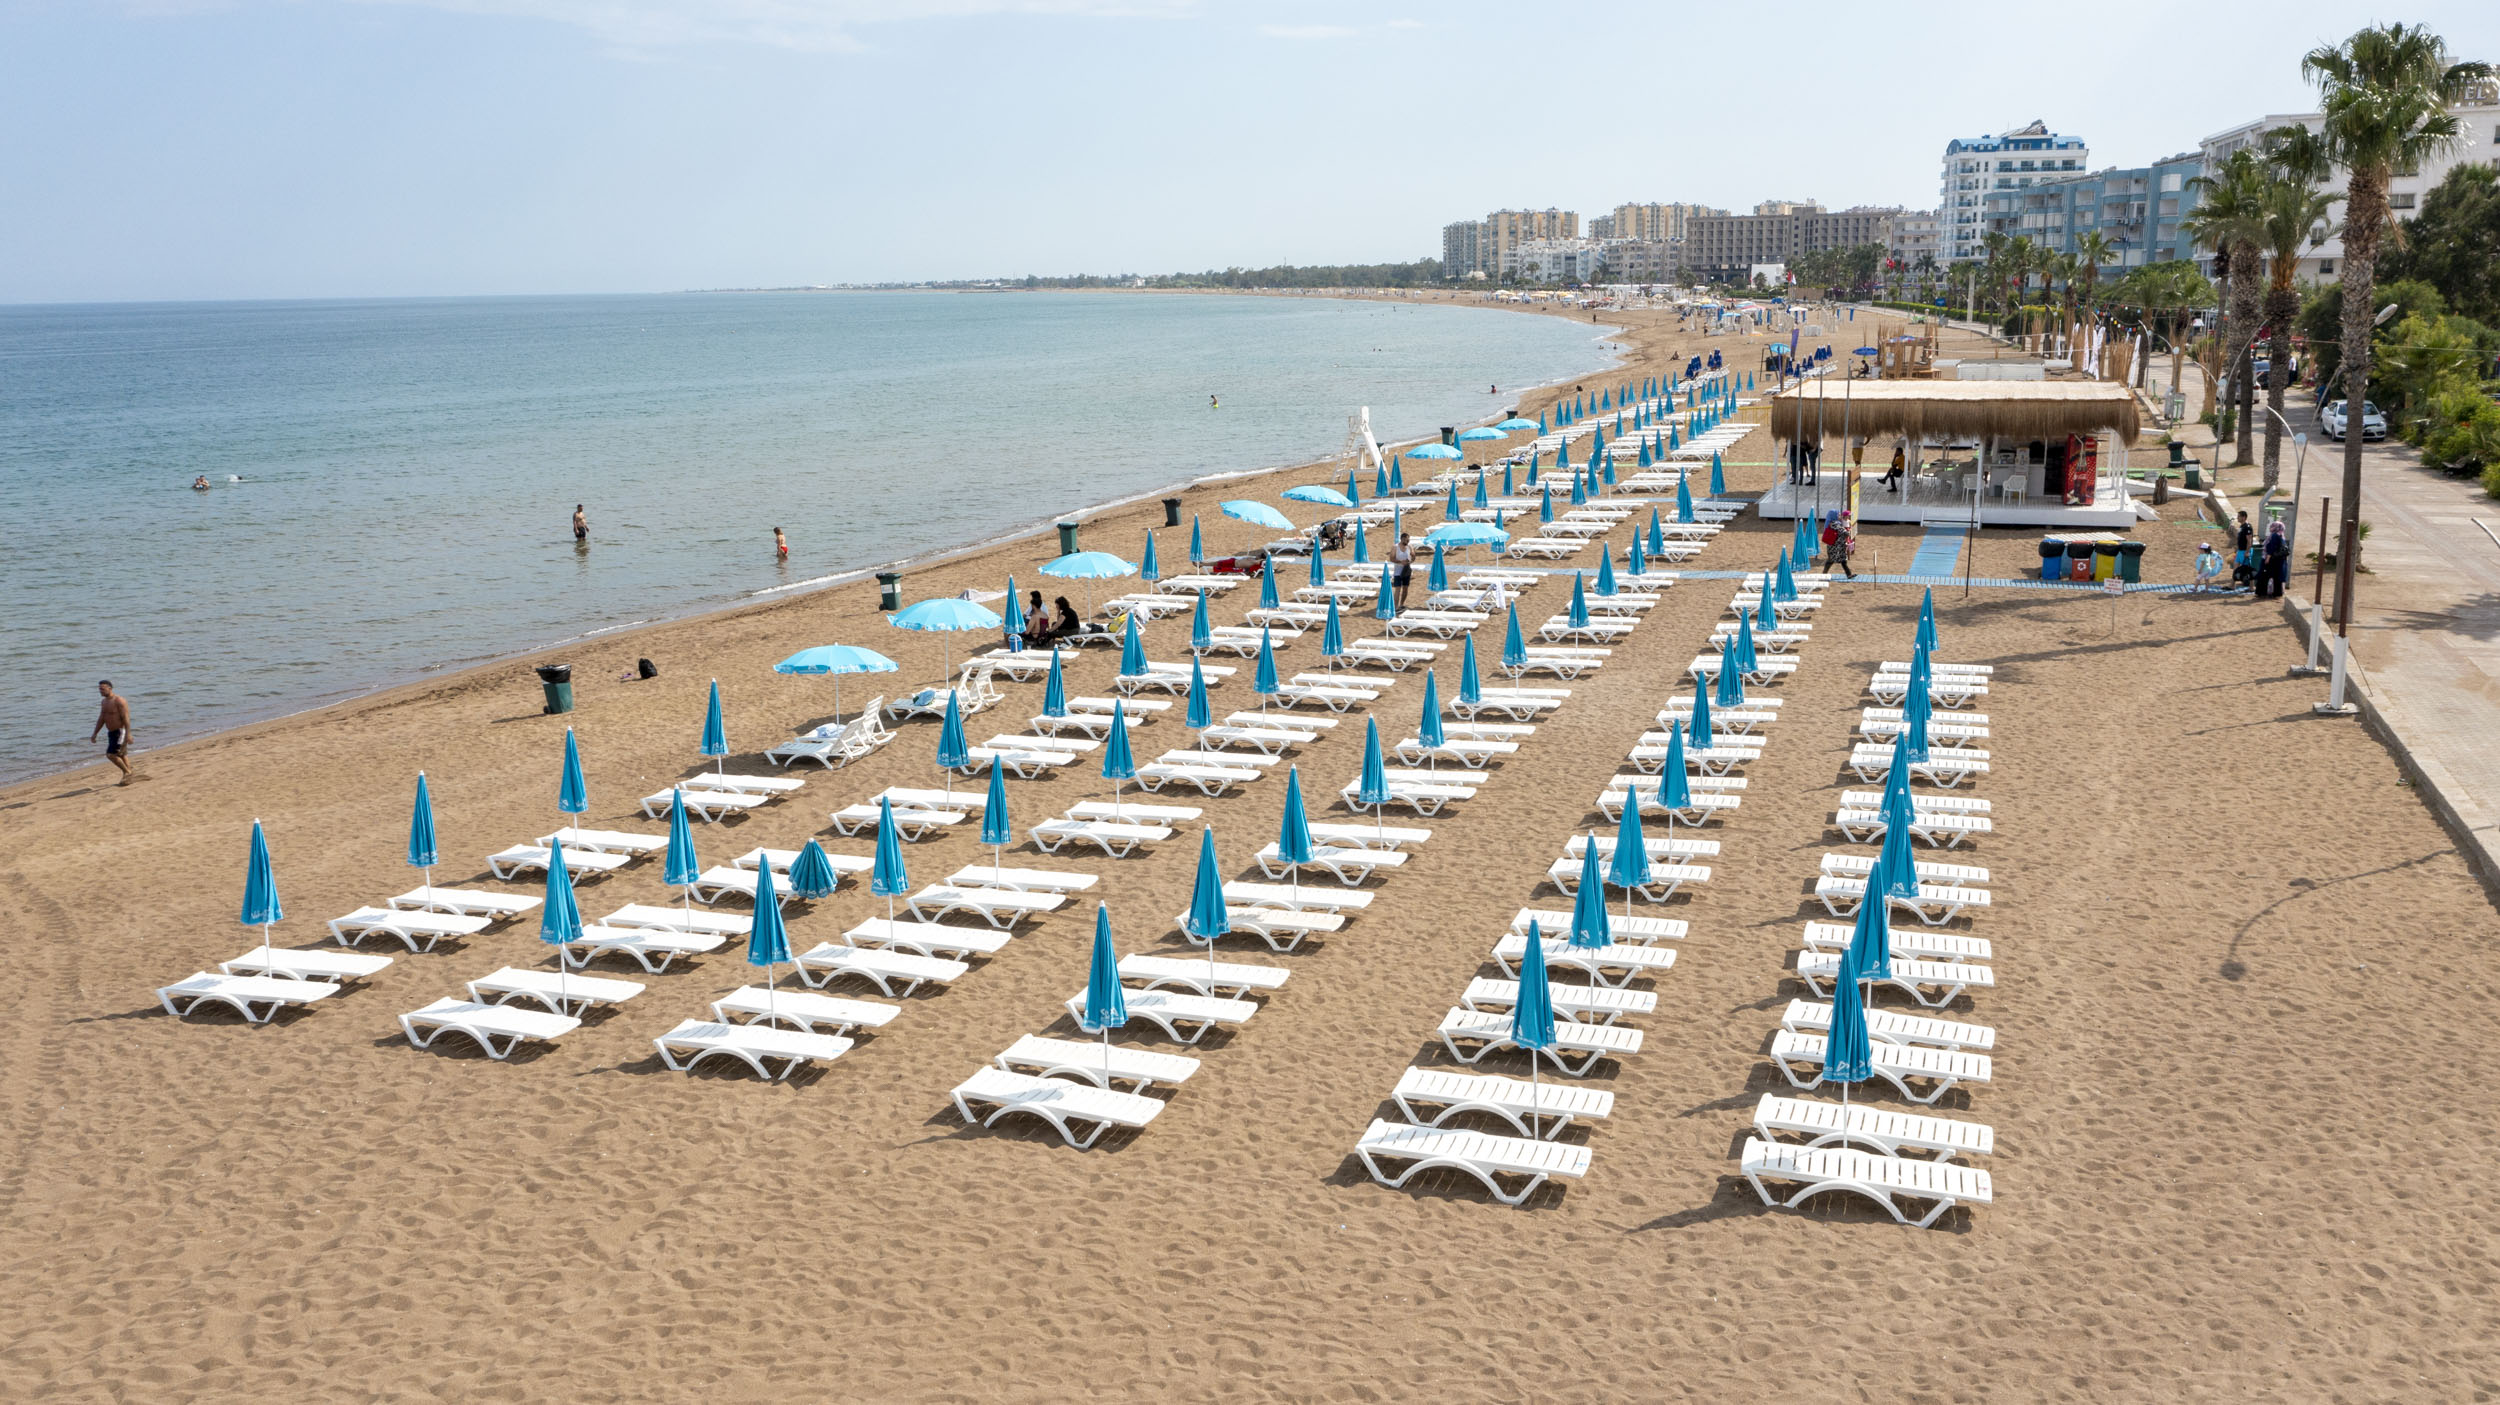 Mersin Büyükşehir’in 12 Halk Plajı 1 Haziran’da Açılıyor￼